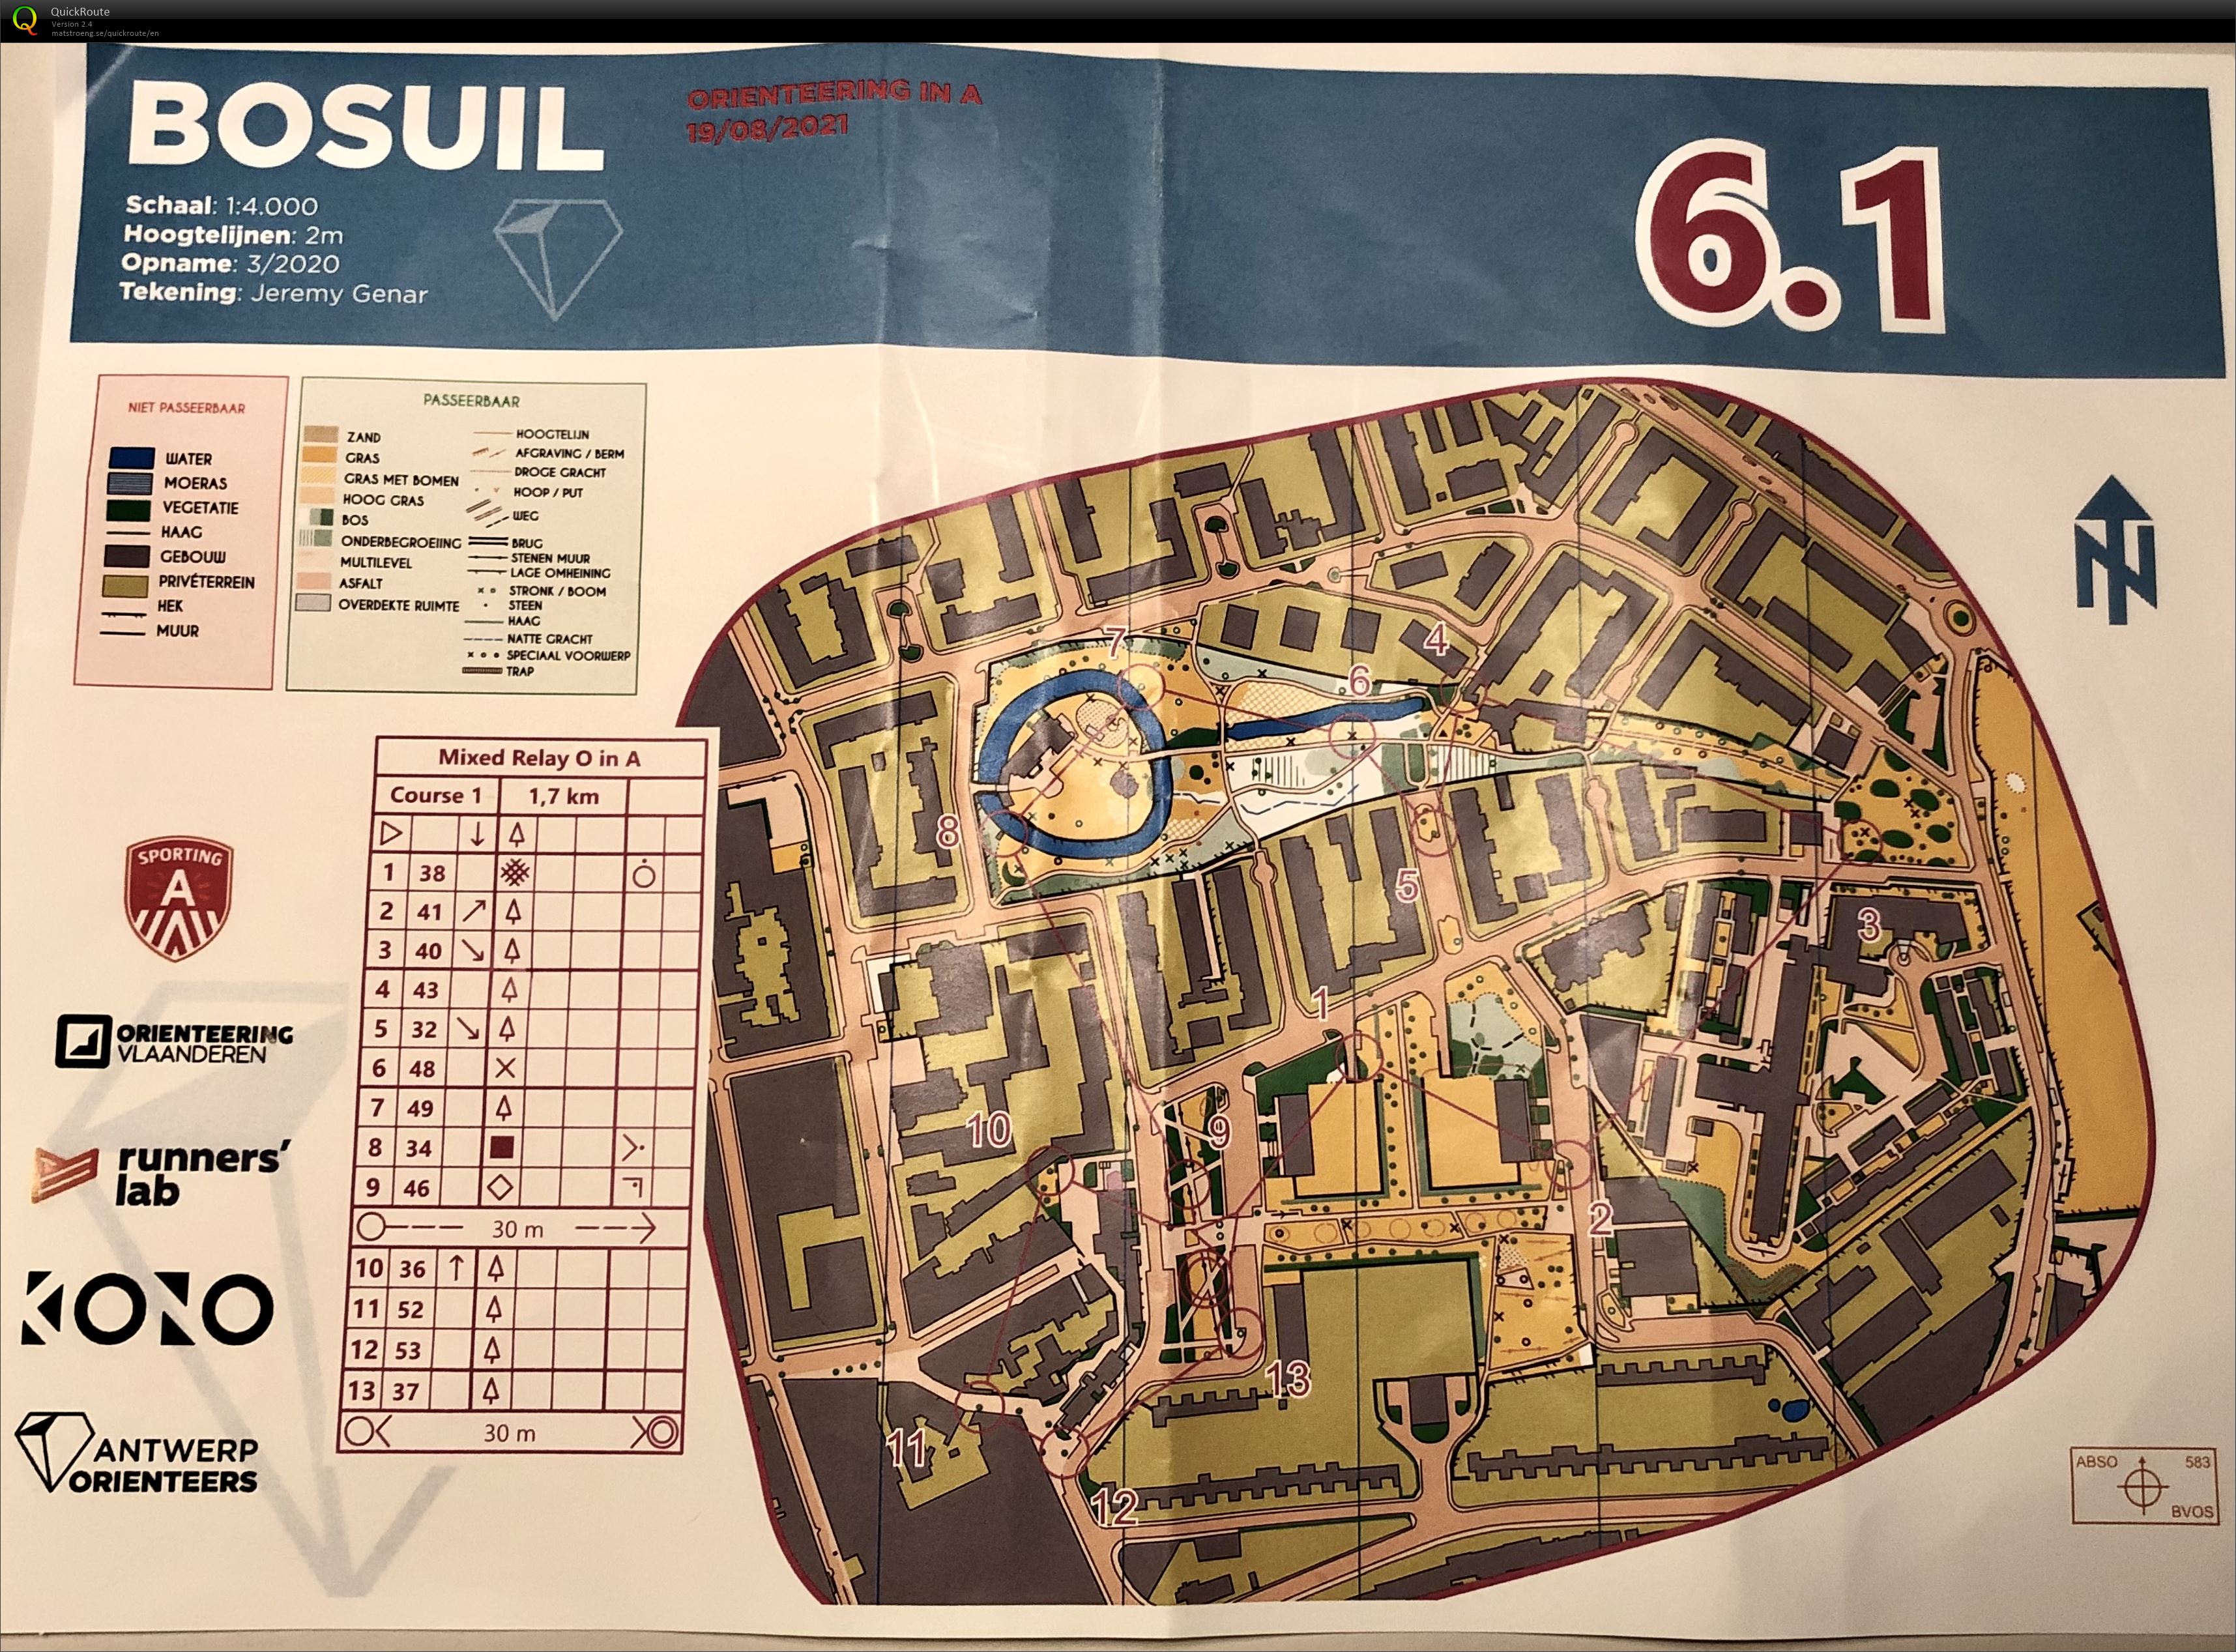 Antwerp Orienteers Team Relay Bosuil 6.3 (19-08-2021)